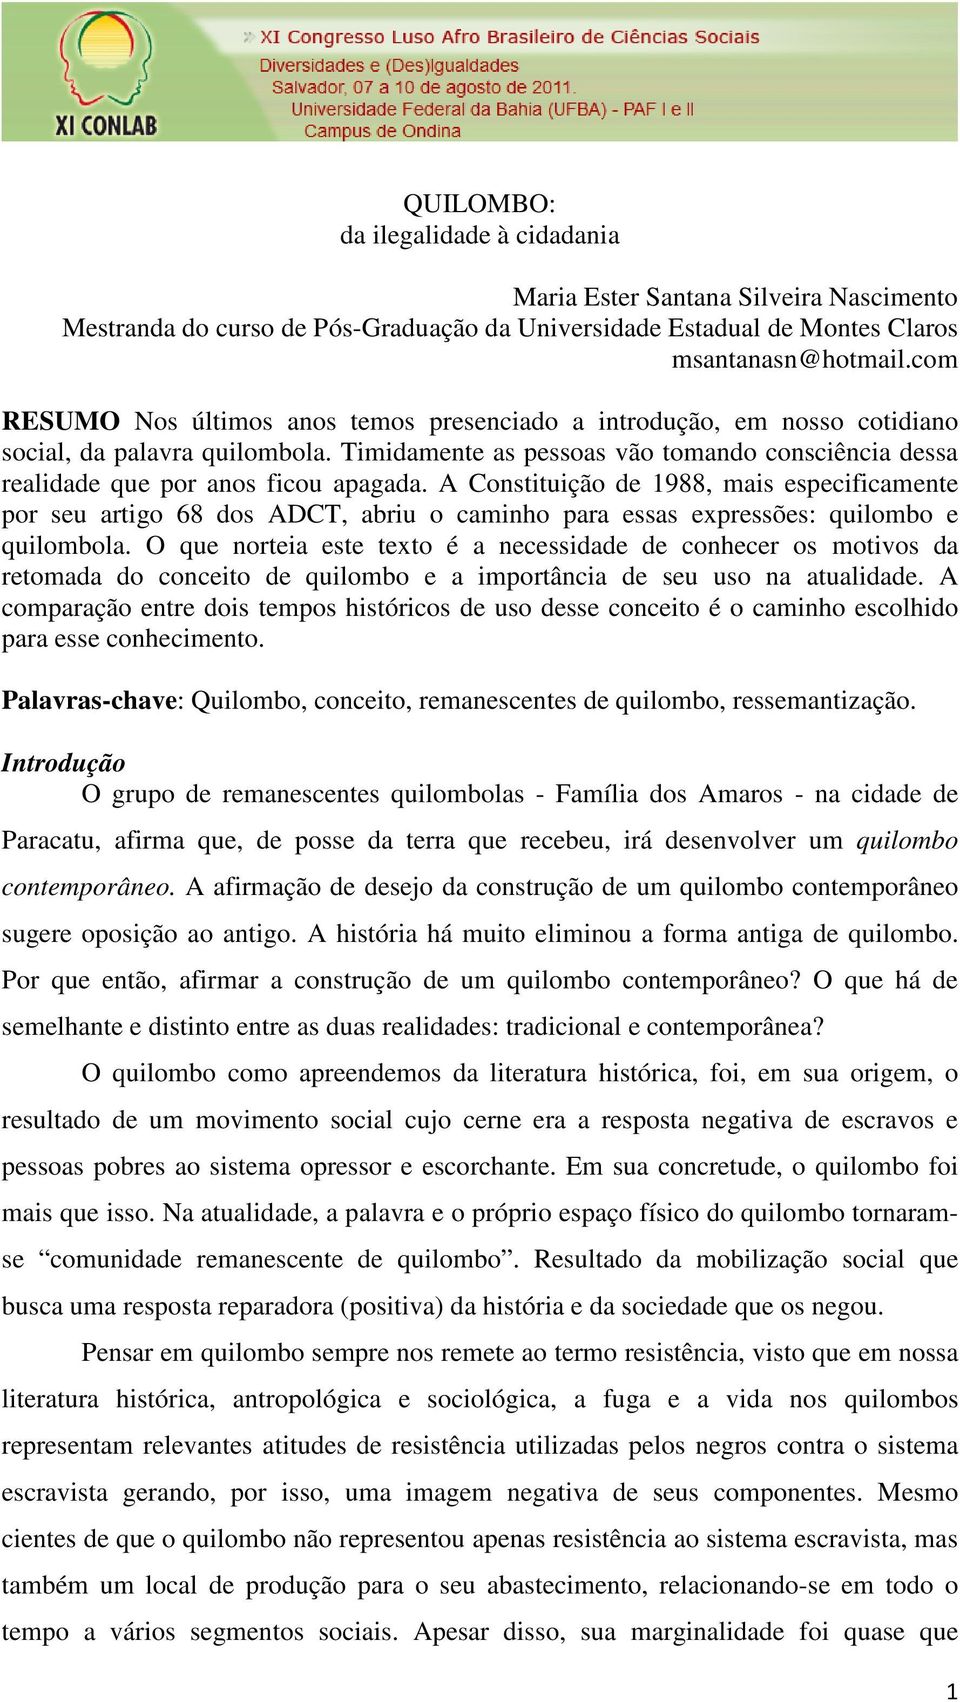 A Constituição de 1988, mais especificamente por seu artigo 68 dos ADCT, abriu o caminho para essas expressões: quilombo e quilombola.